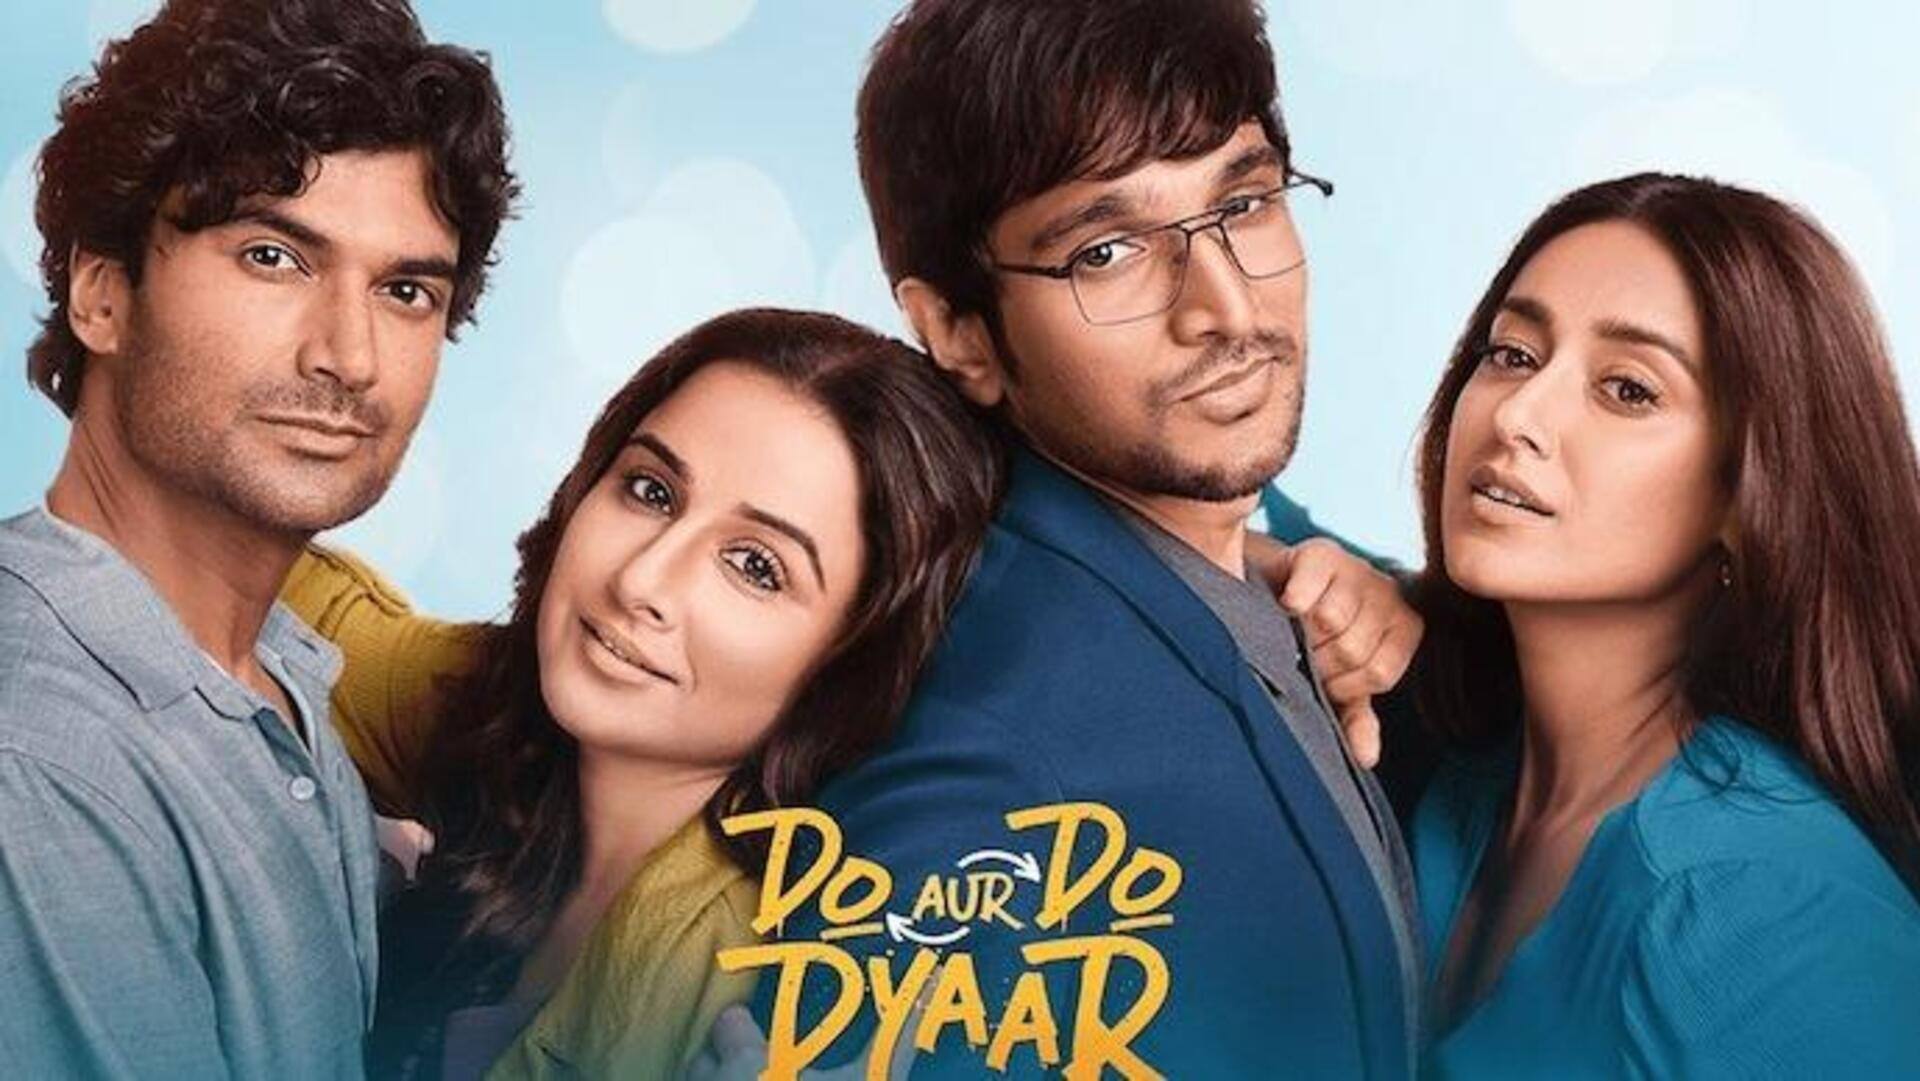 Box office: 'Do Aur Do Pyaar' earns only ₹50 Lakh